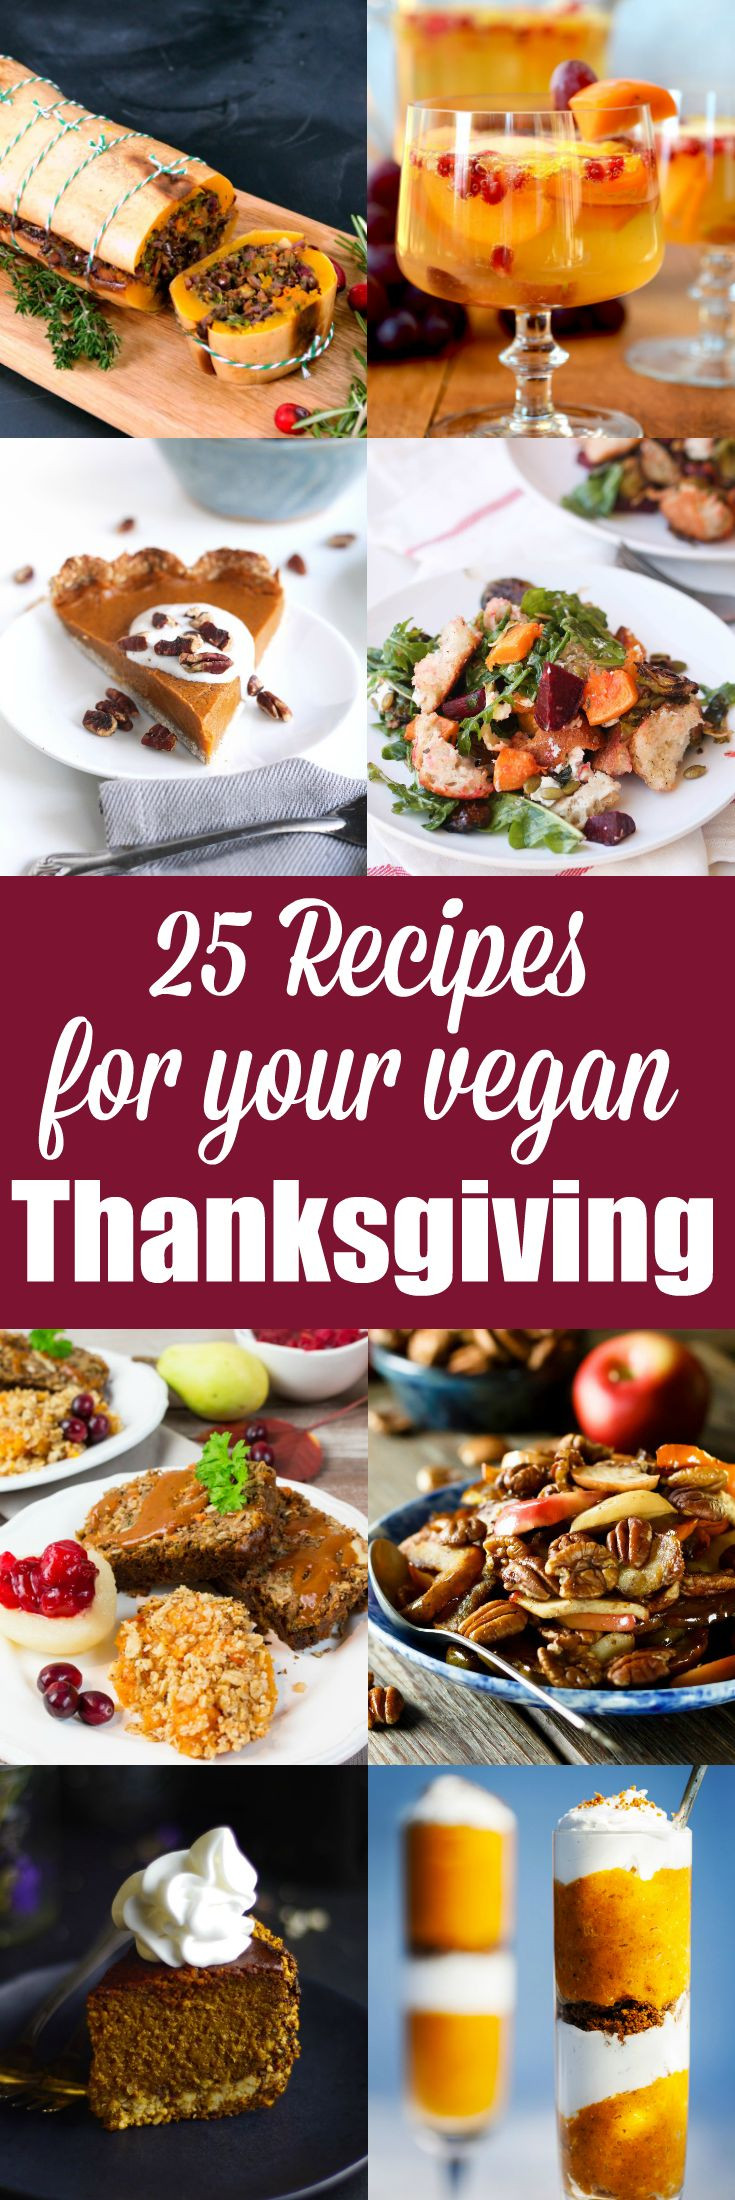 Vegan Recipes For Thanksgiving
 Best 25 Vegemite recipes ideas on Pinterest